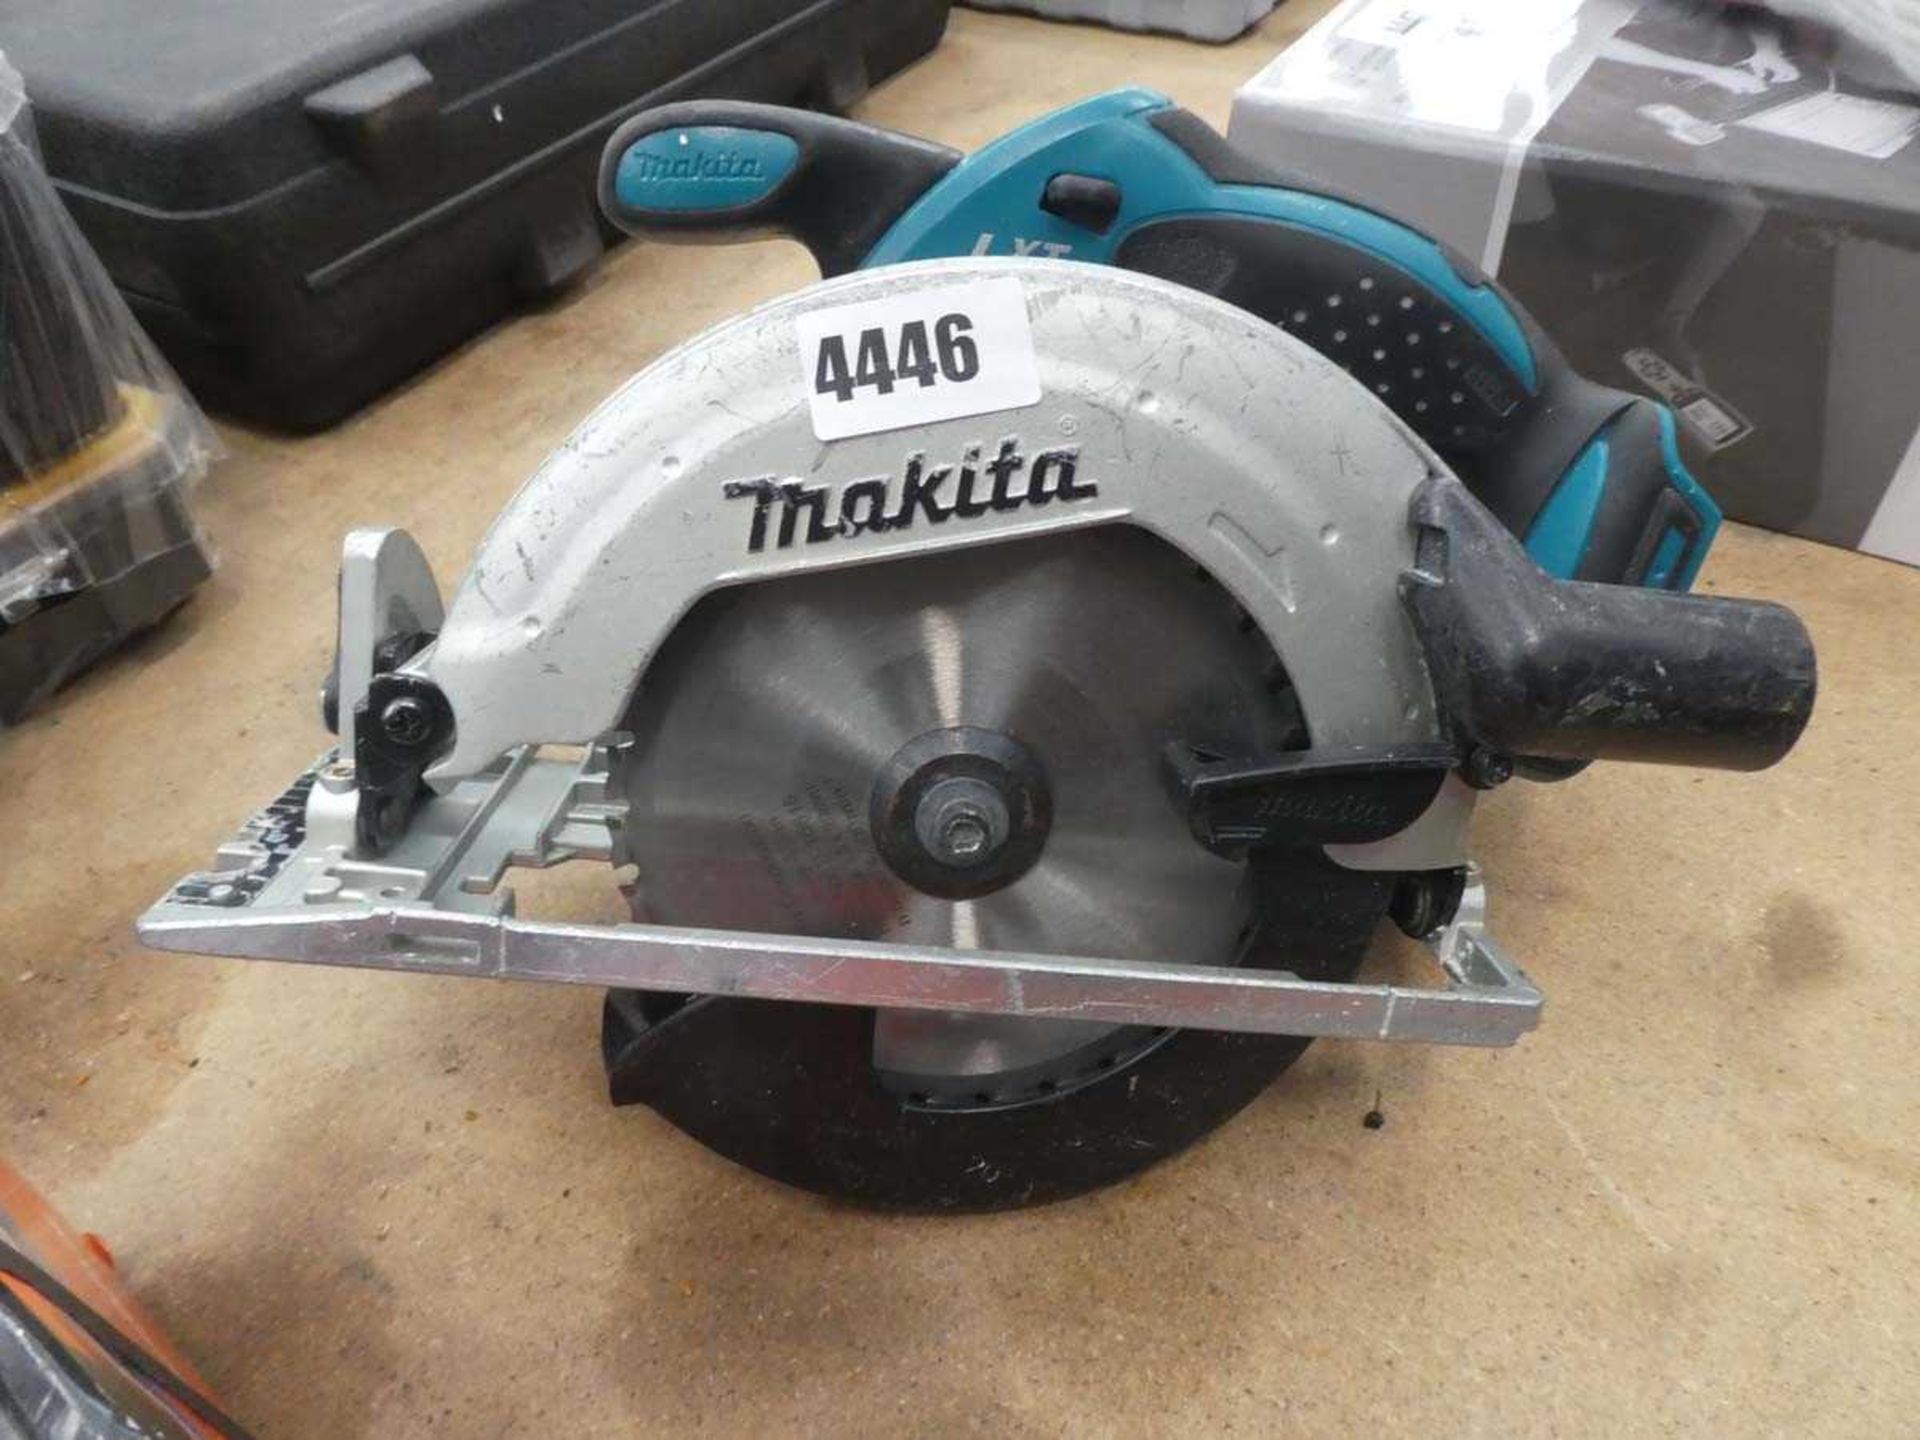 Makita circular saw, no battery or charger